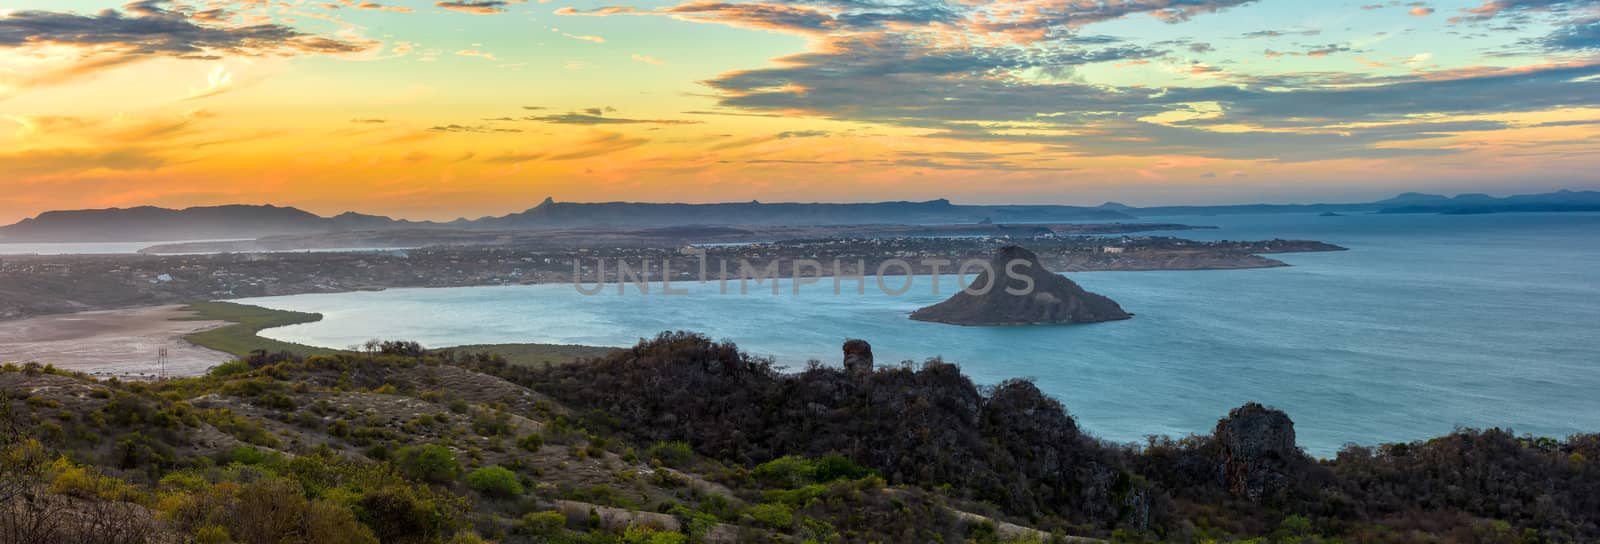 landscape of Antsiranana Bay, Madagascar by artush